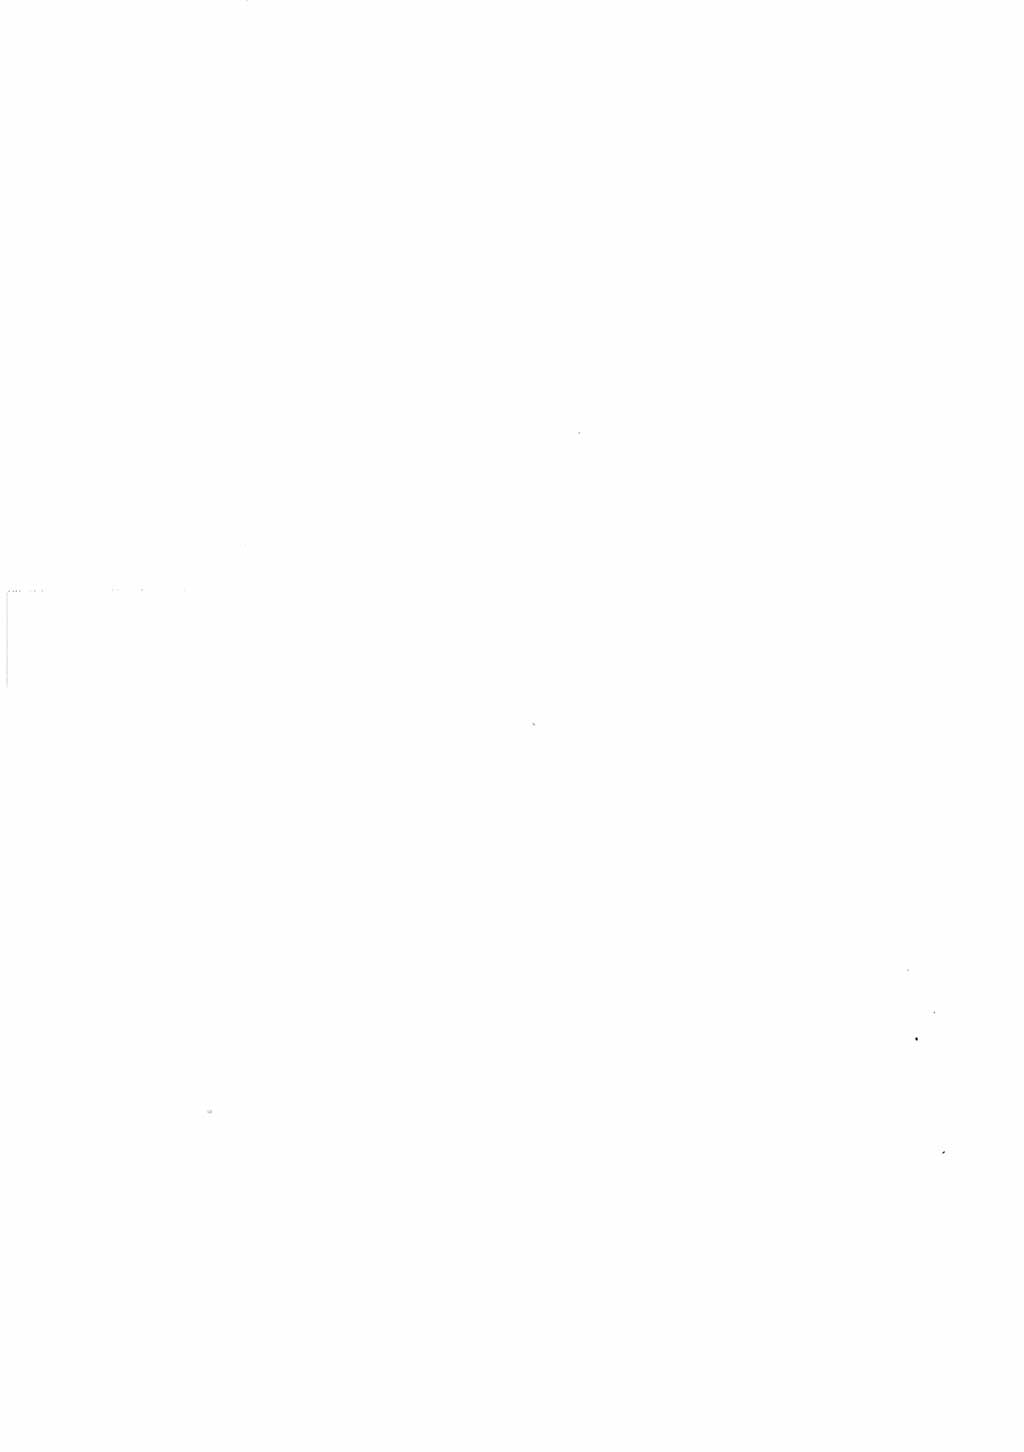 Katalog des Unrechts, Untersuchungsausschuß Freiheitlicher Juristen (UfJ) [Bundesrepublik Deutschland (BRD)] 1956, Seite 96 (Kat. UnR. UfJ BRD 1956, S. 96)